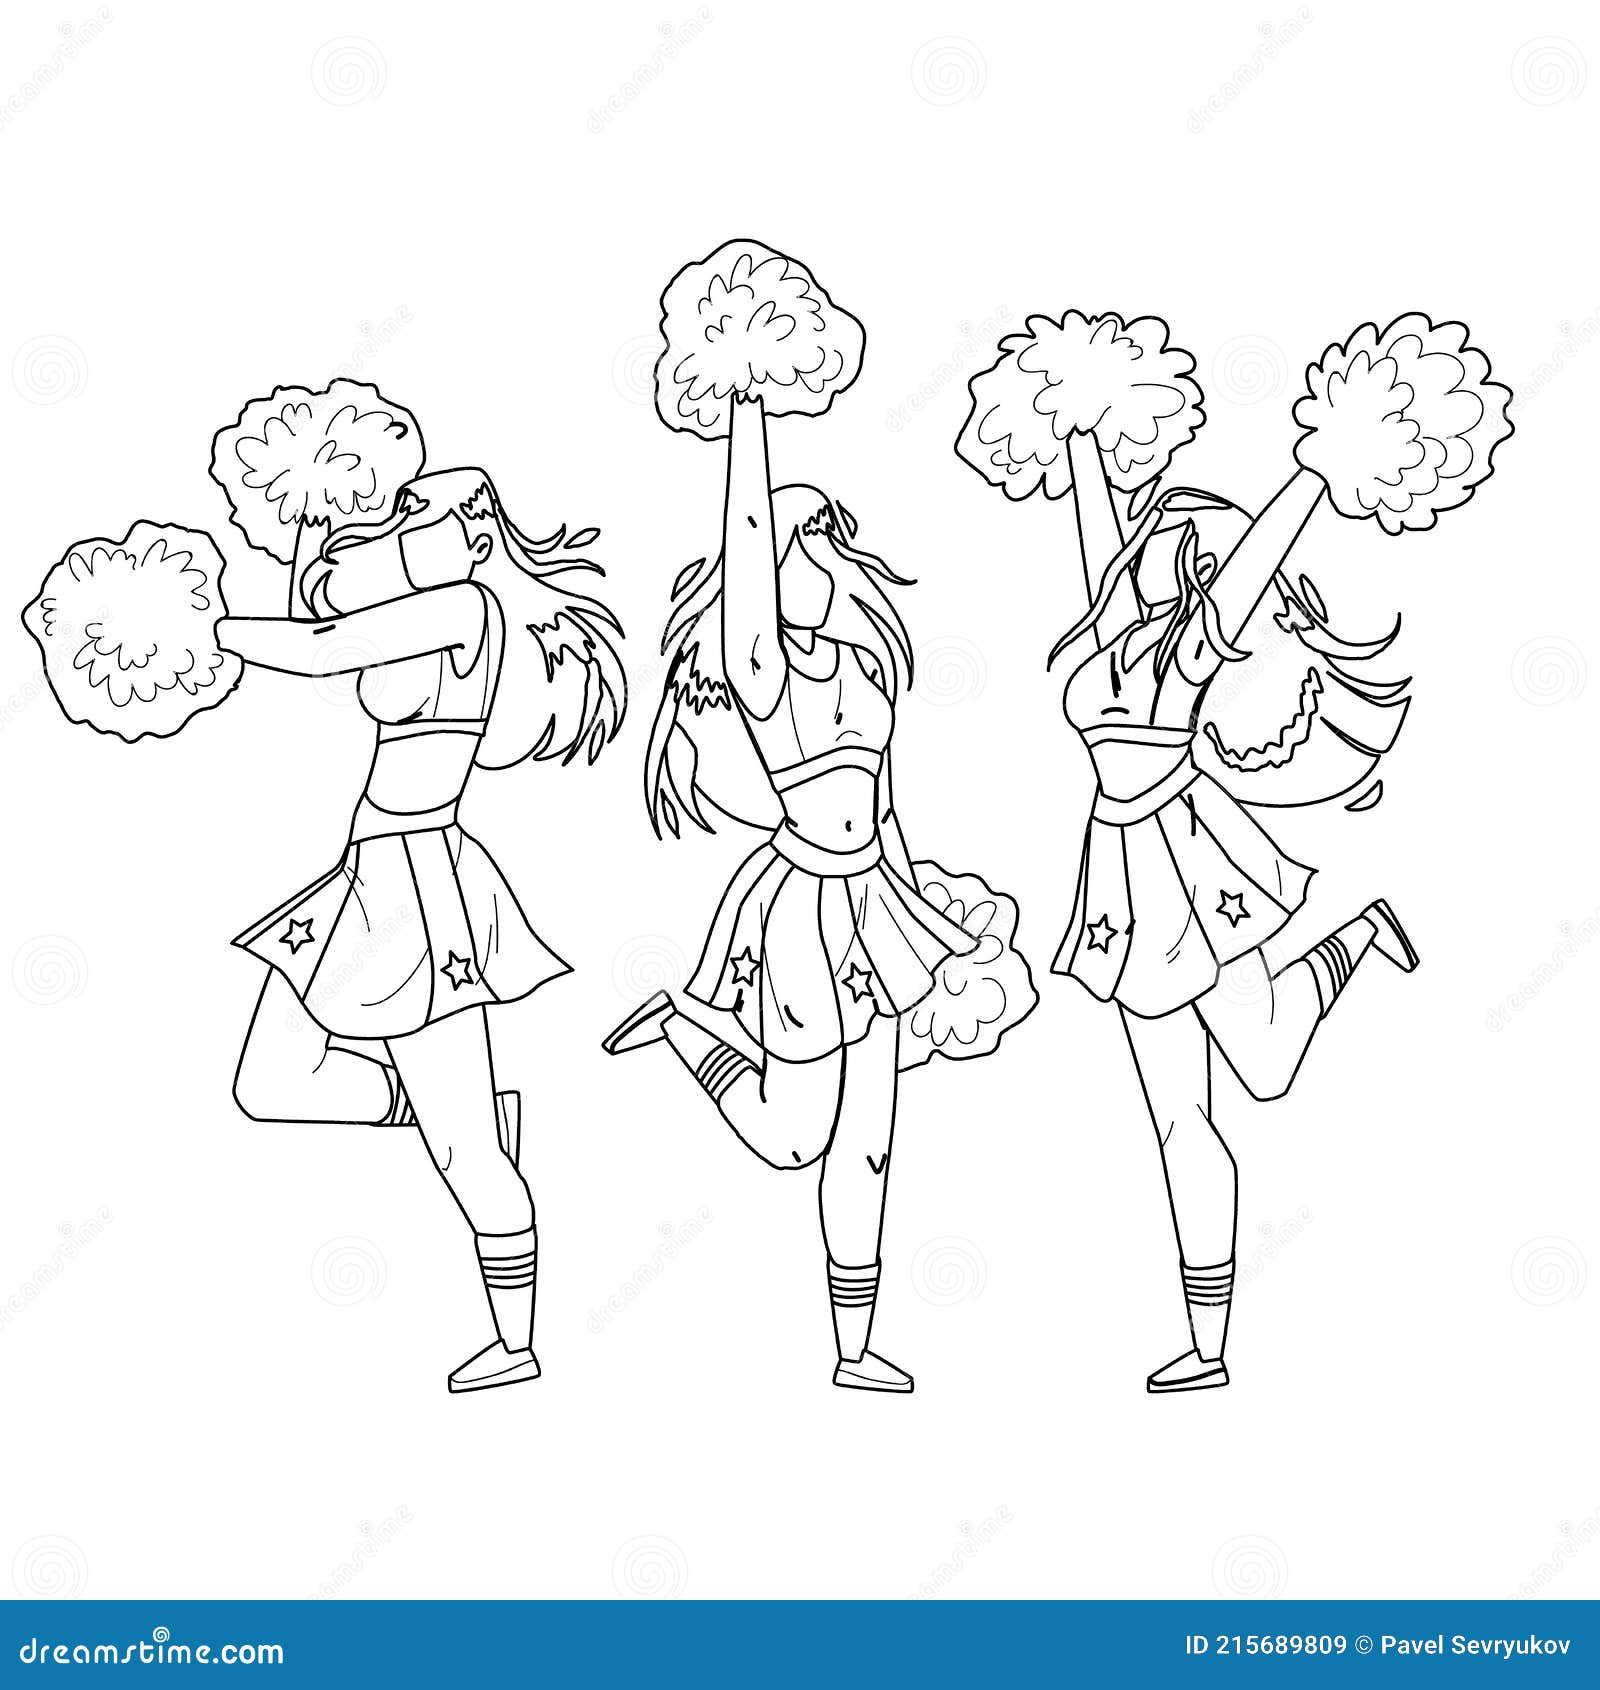 Cheerleaders Girls Dancing with Pompoms Stock Vector - Illustration of cheerleaders, active: 215689809